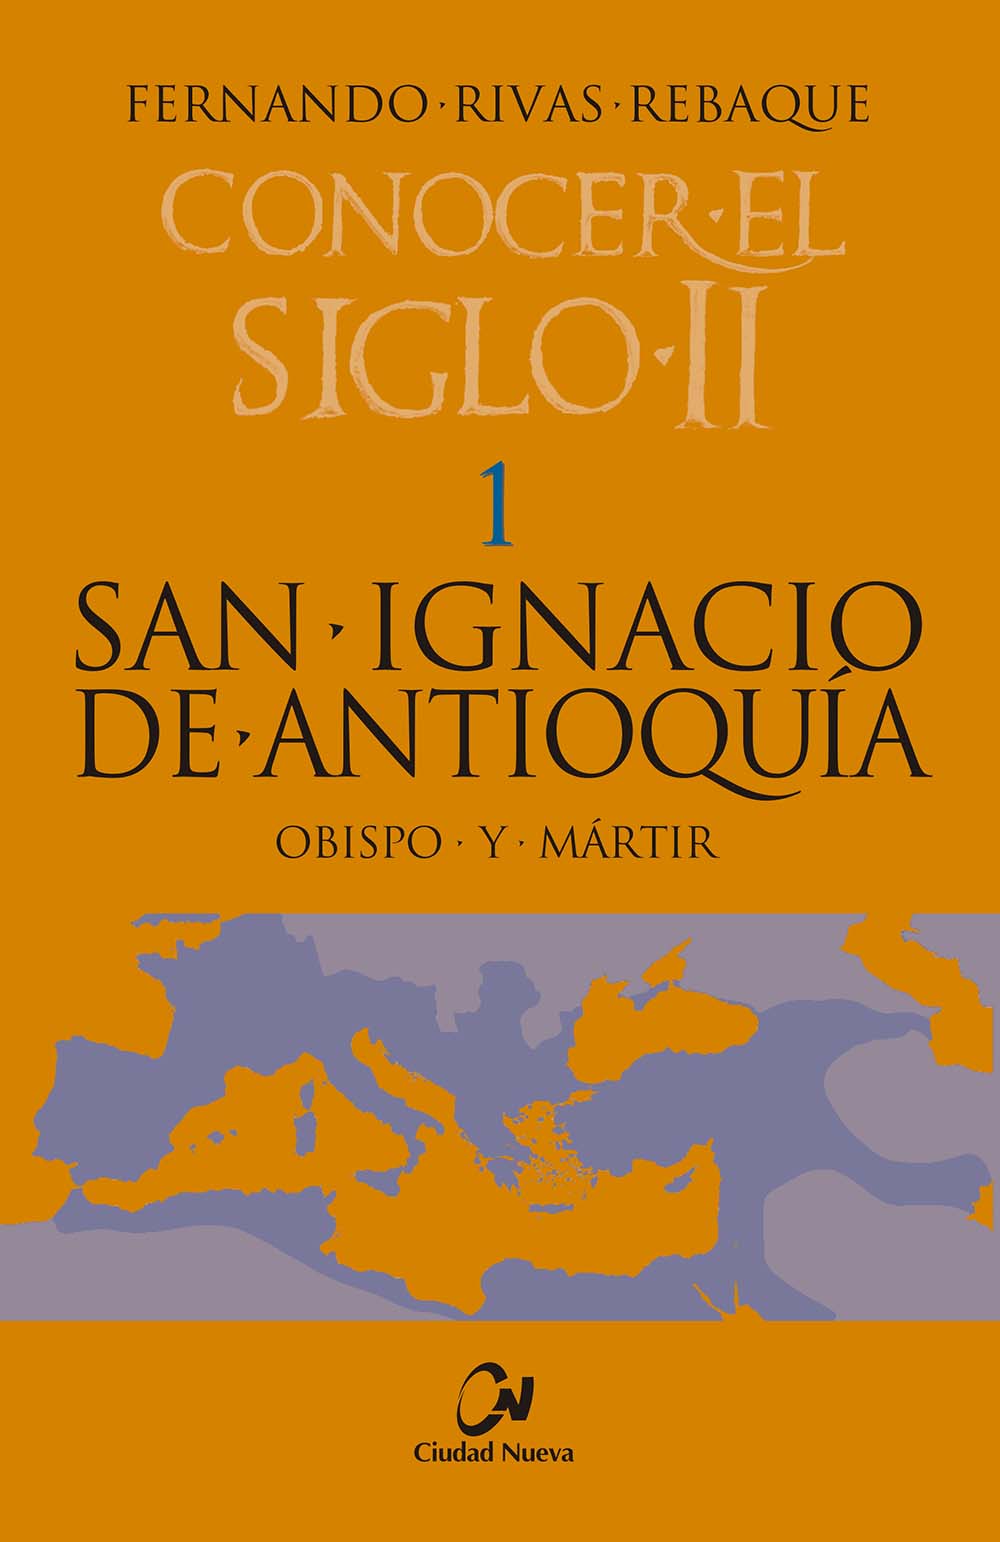 Imagen de portada del libro San Ignacio de Antioquía, obispo y mártir